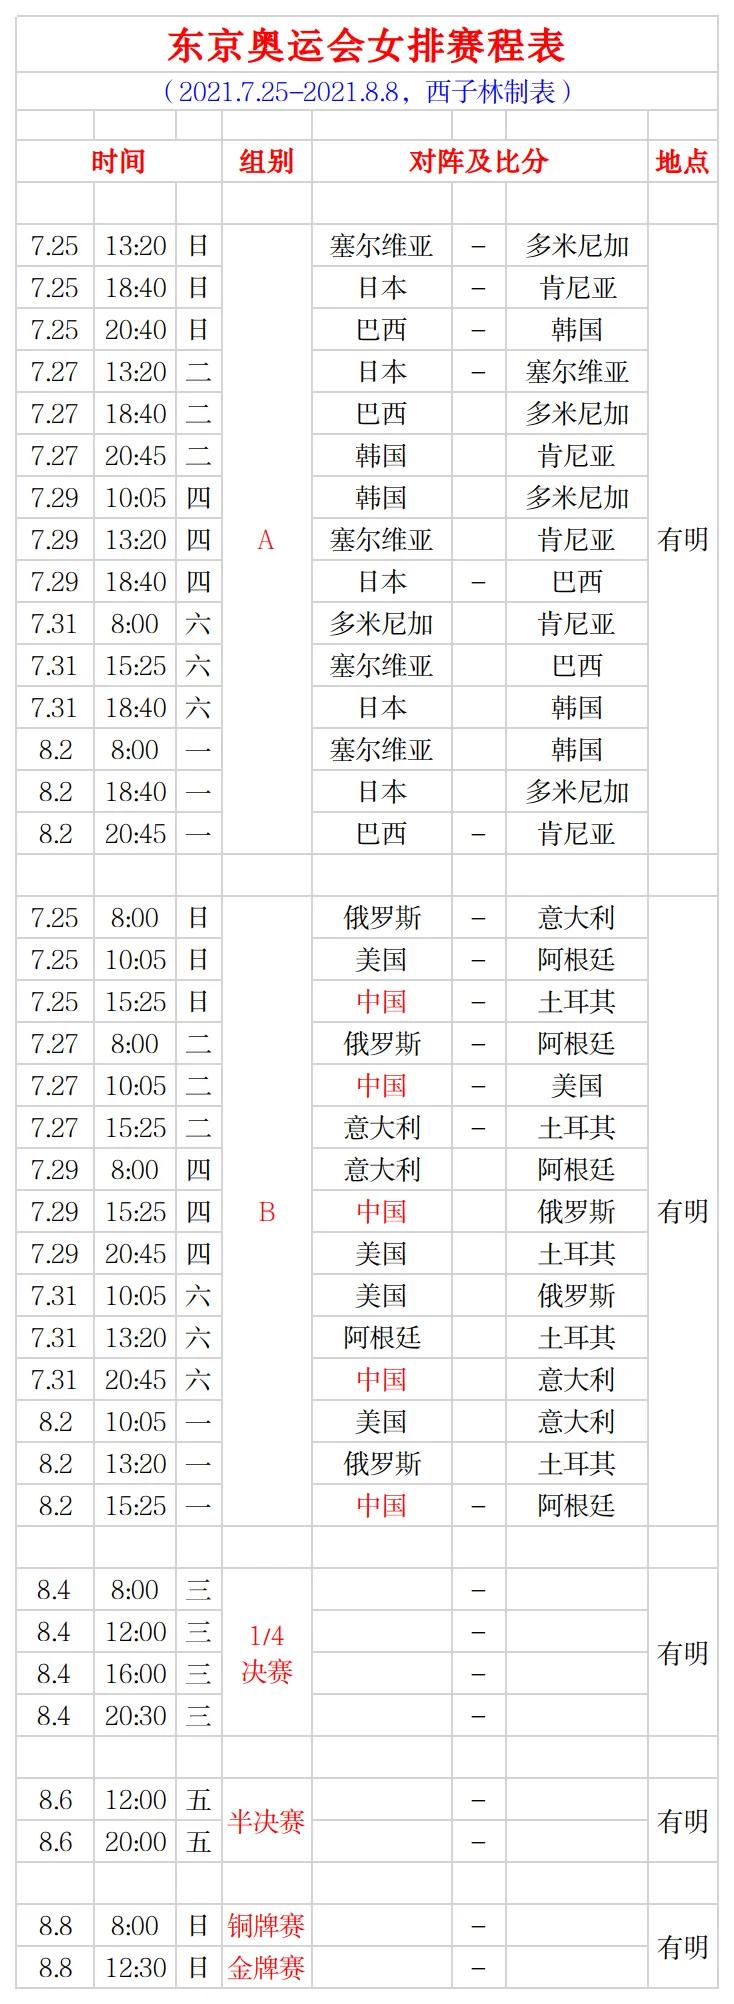 东京奥运会女排赛程表(简明-完整版) 中国队世界联赛表现添看点